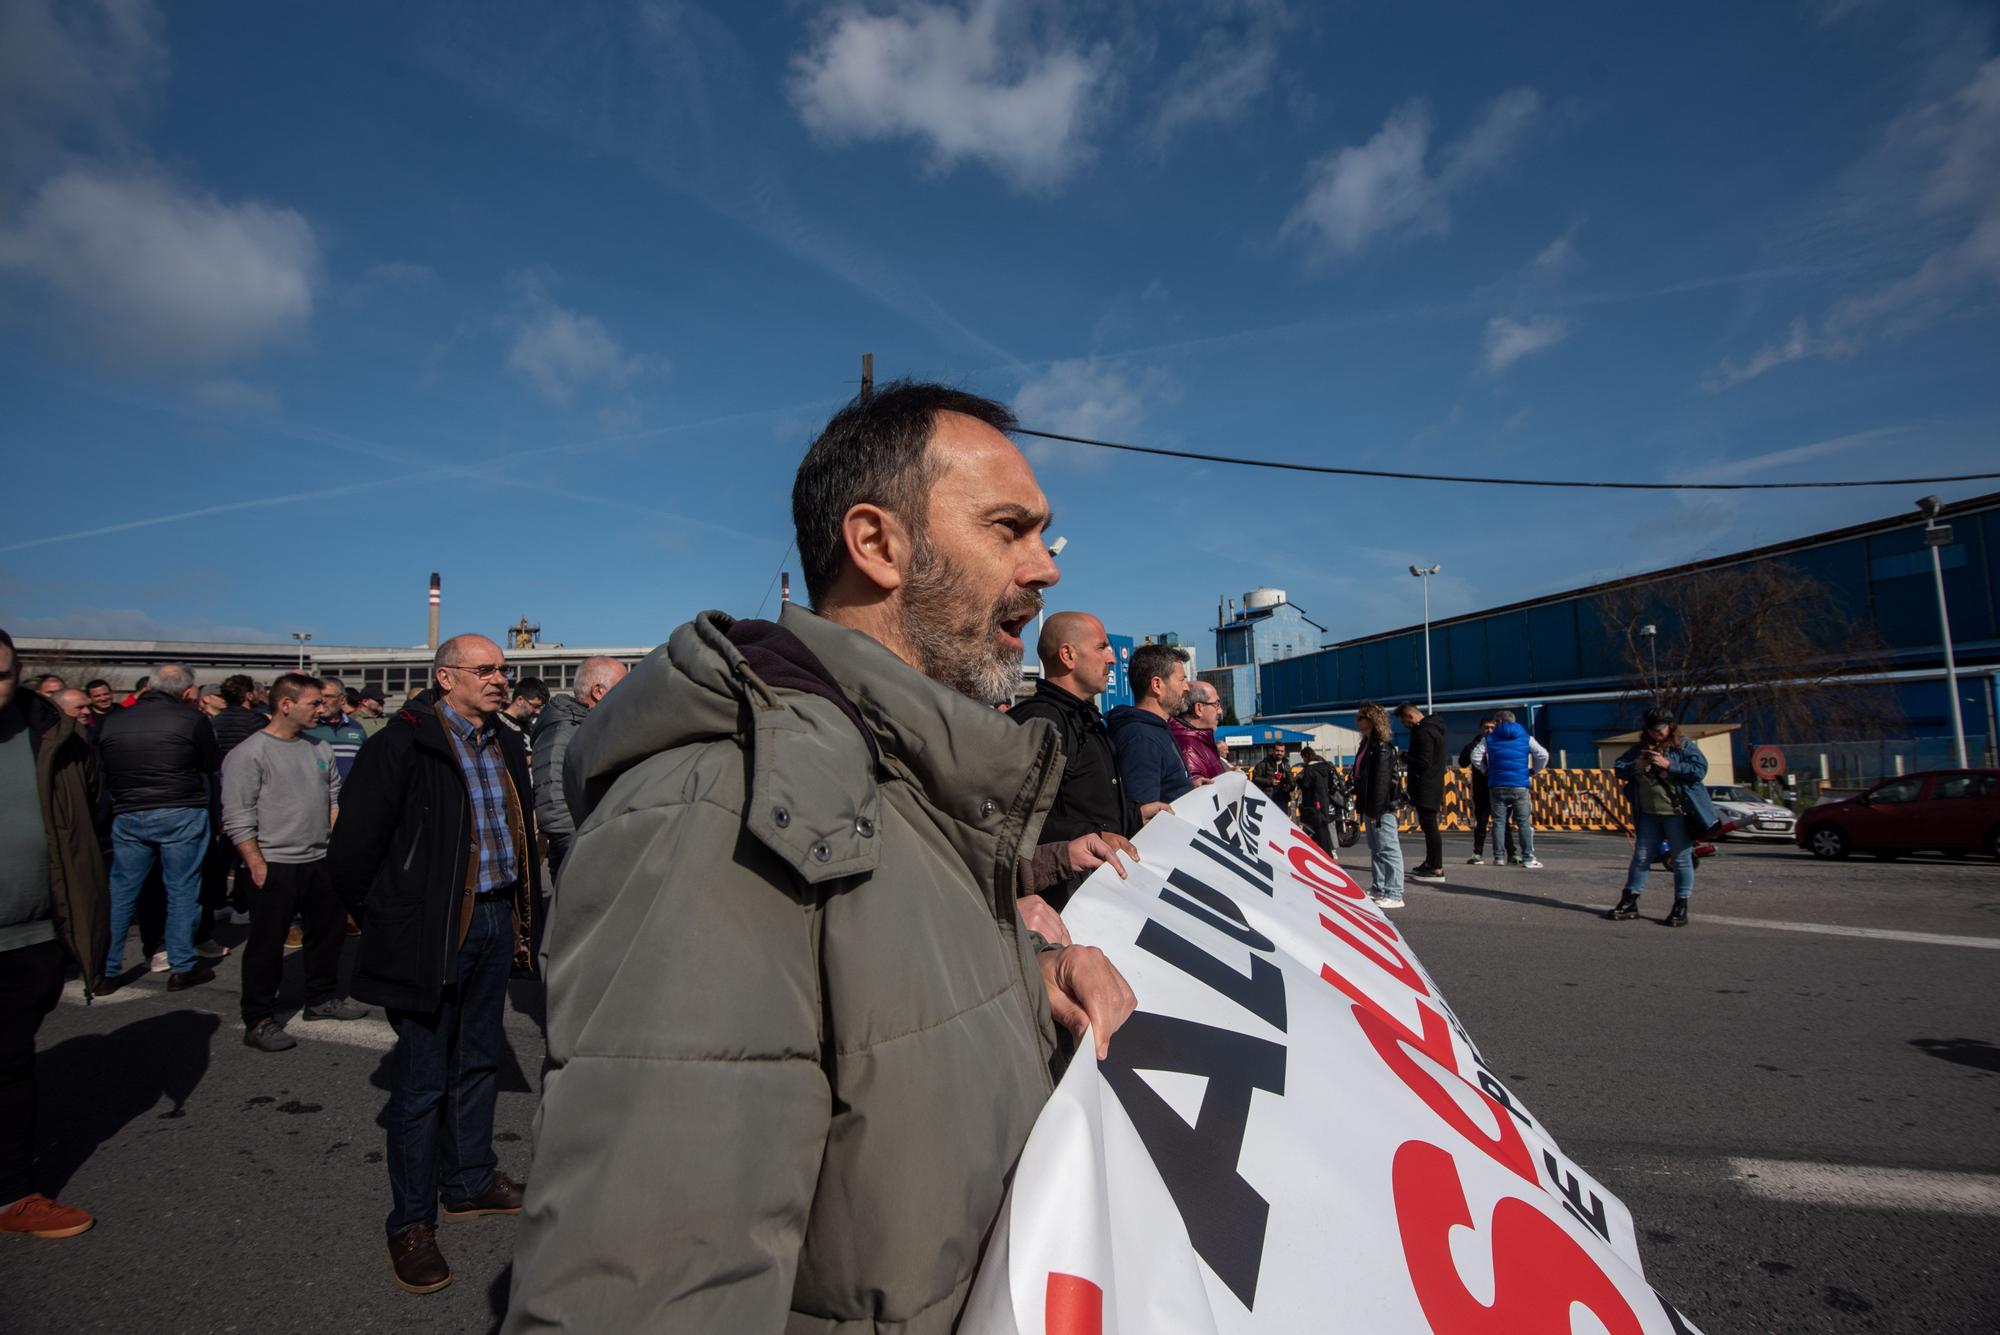 Protesta de trabajadores de Alu Ibérica